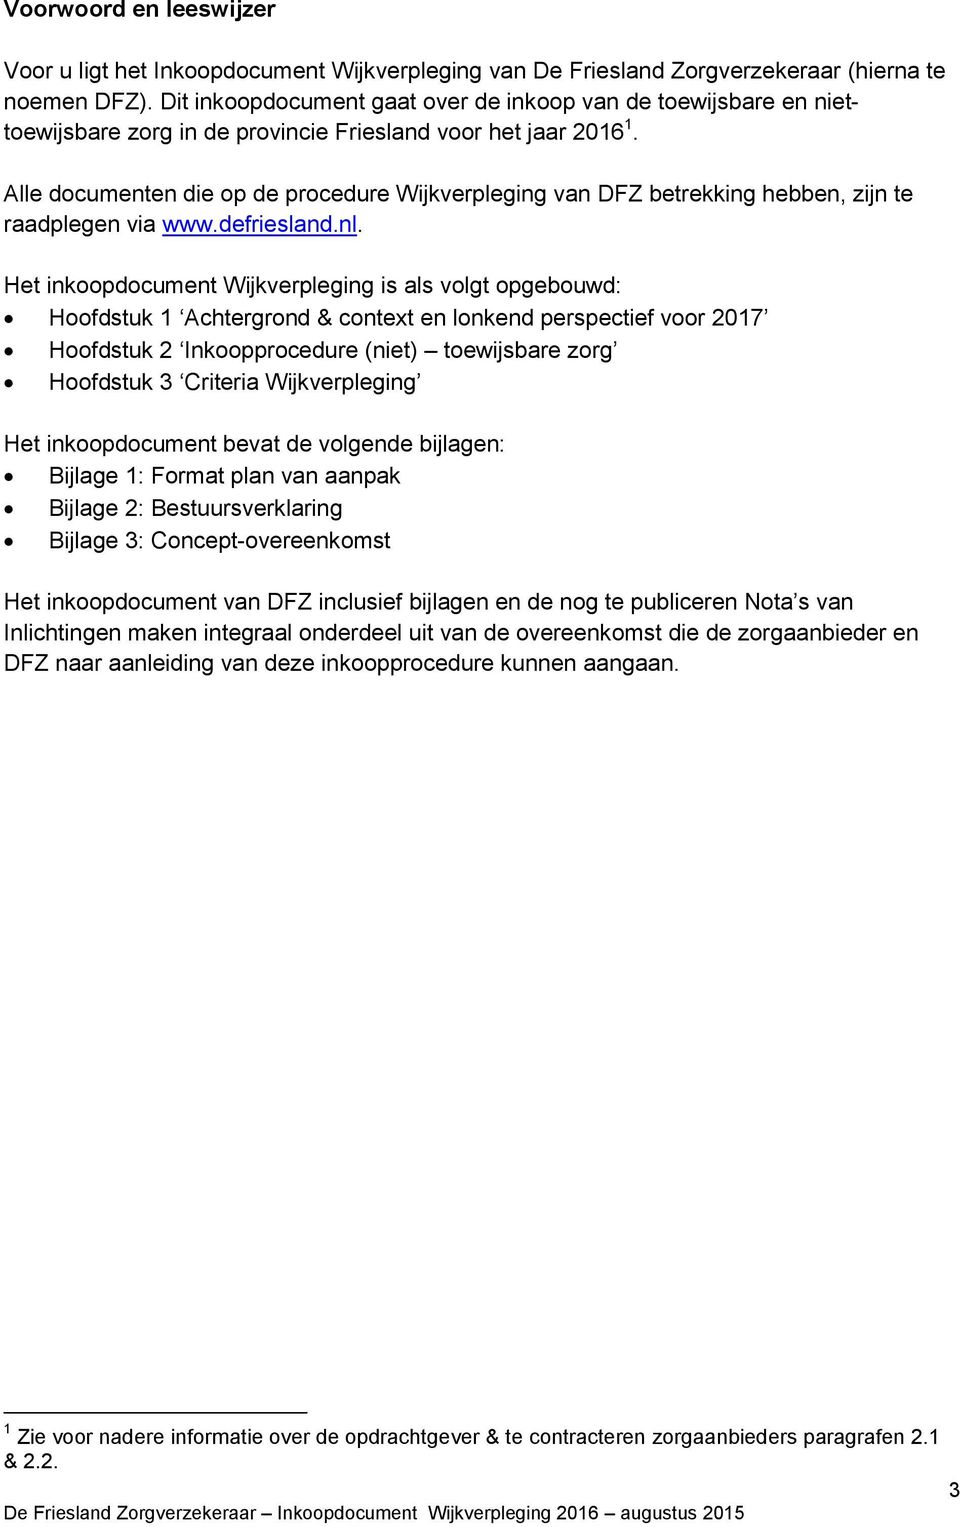 Alle documenten die op de procedure Wijkverpleging van DFZ betrekking hebben, zijn te raadplegen via www.defriesland.nl.